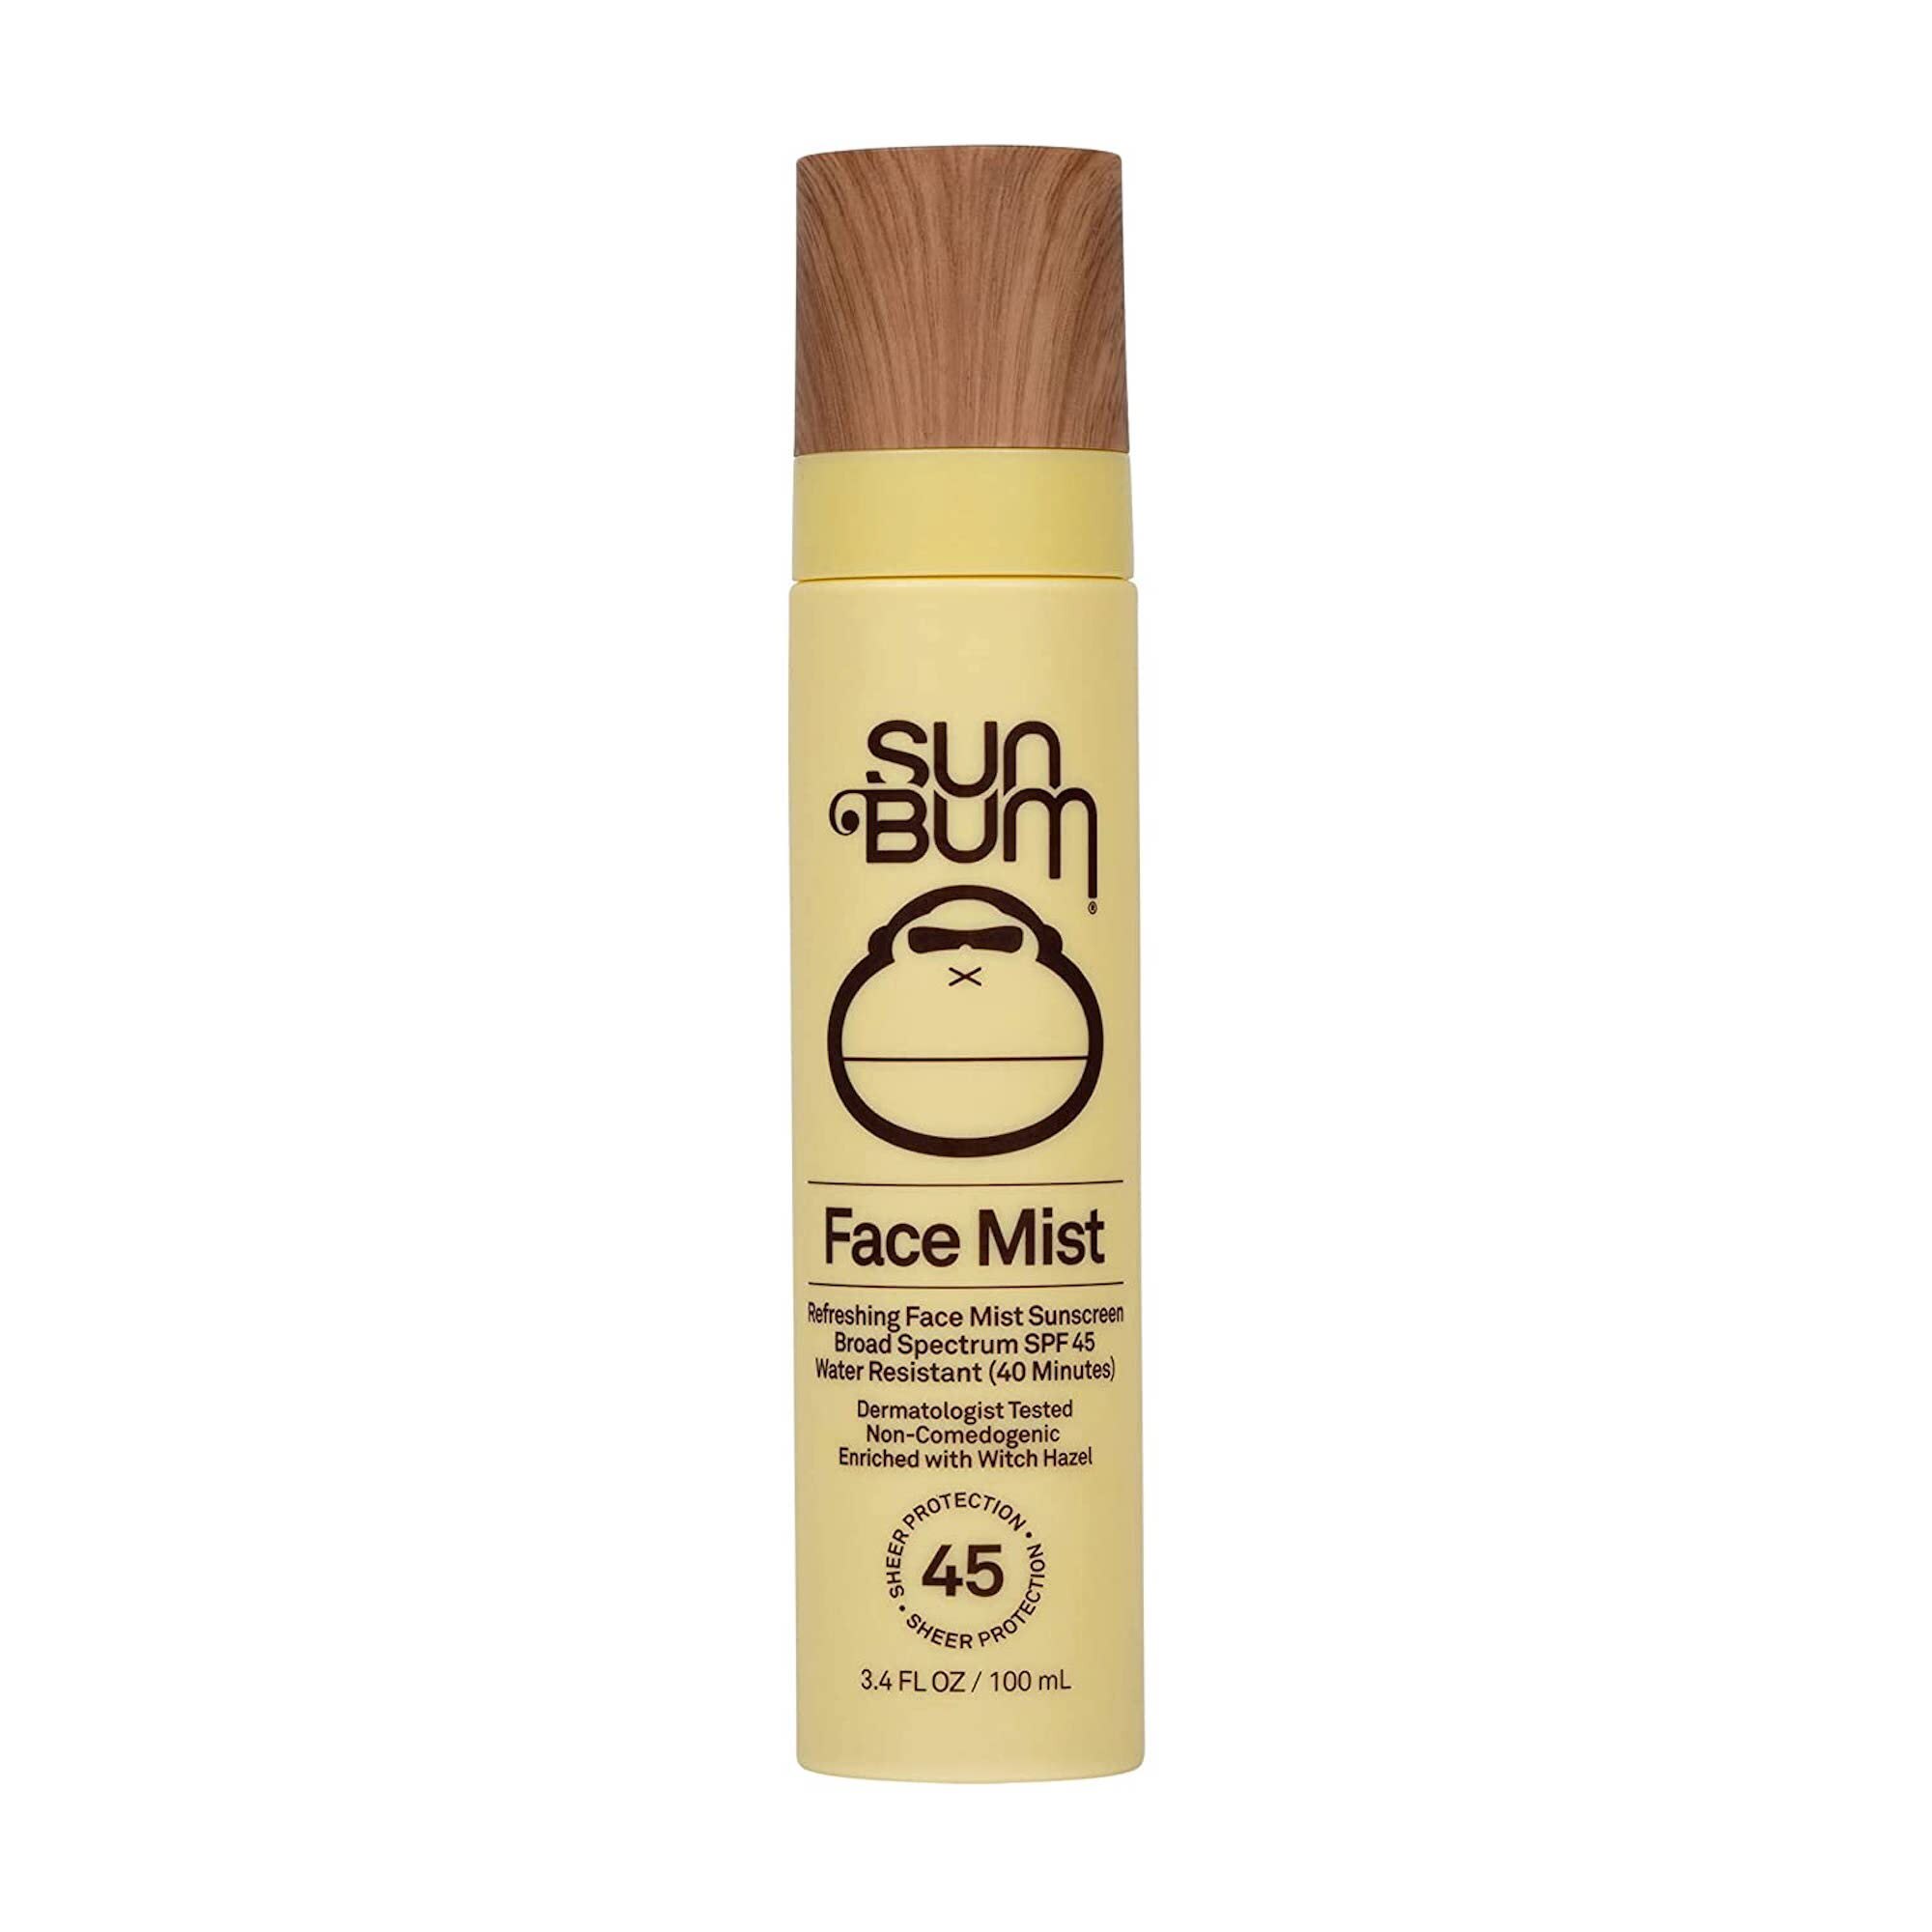 Sun Bum Original SPF 45 Sunscreen Face Mist, 3.4 OZ